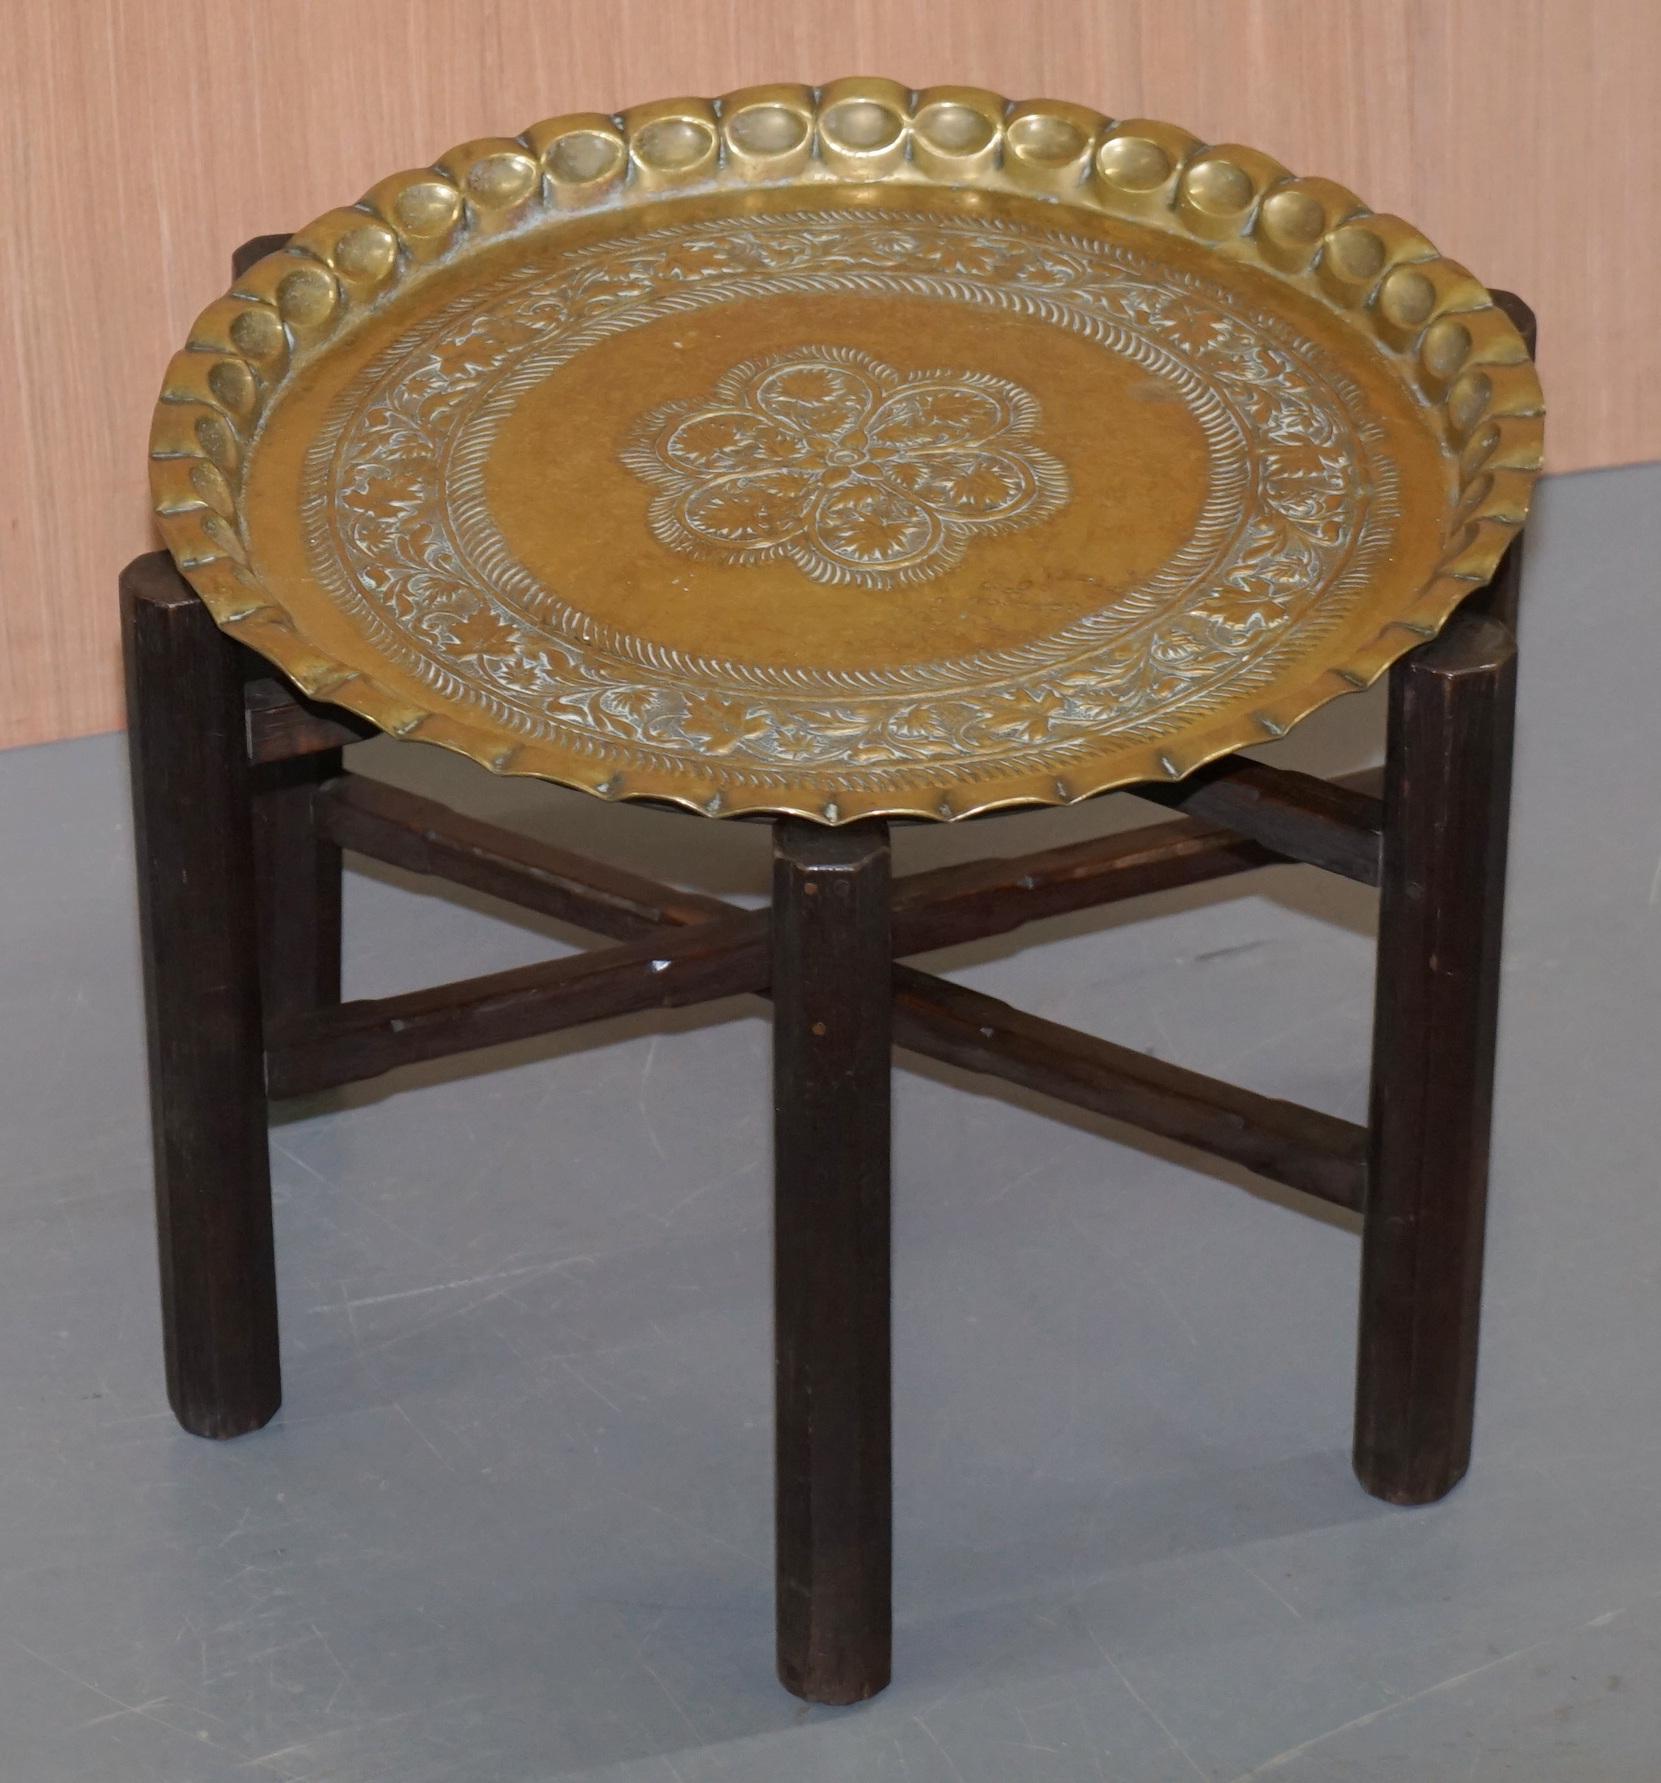 Nous avons le plaisir de proposer à la vente cette table pliante en laiton gravé d'origine persane et marocaine, très rare, datant des années 1920-1940

Une table très belle et bien faite, le plateau est magnifiquement gravé à la main

Nous